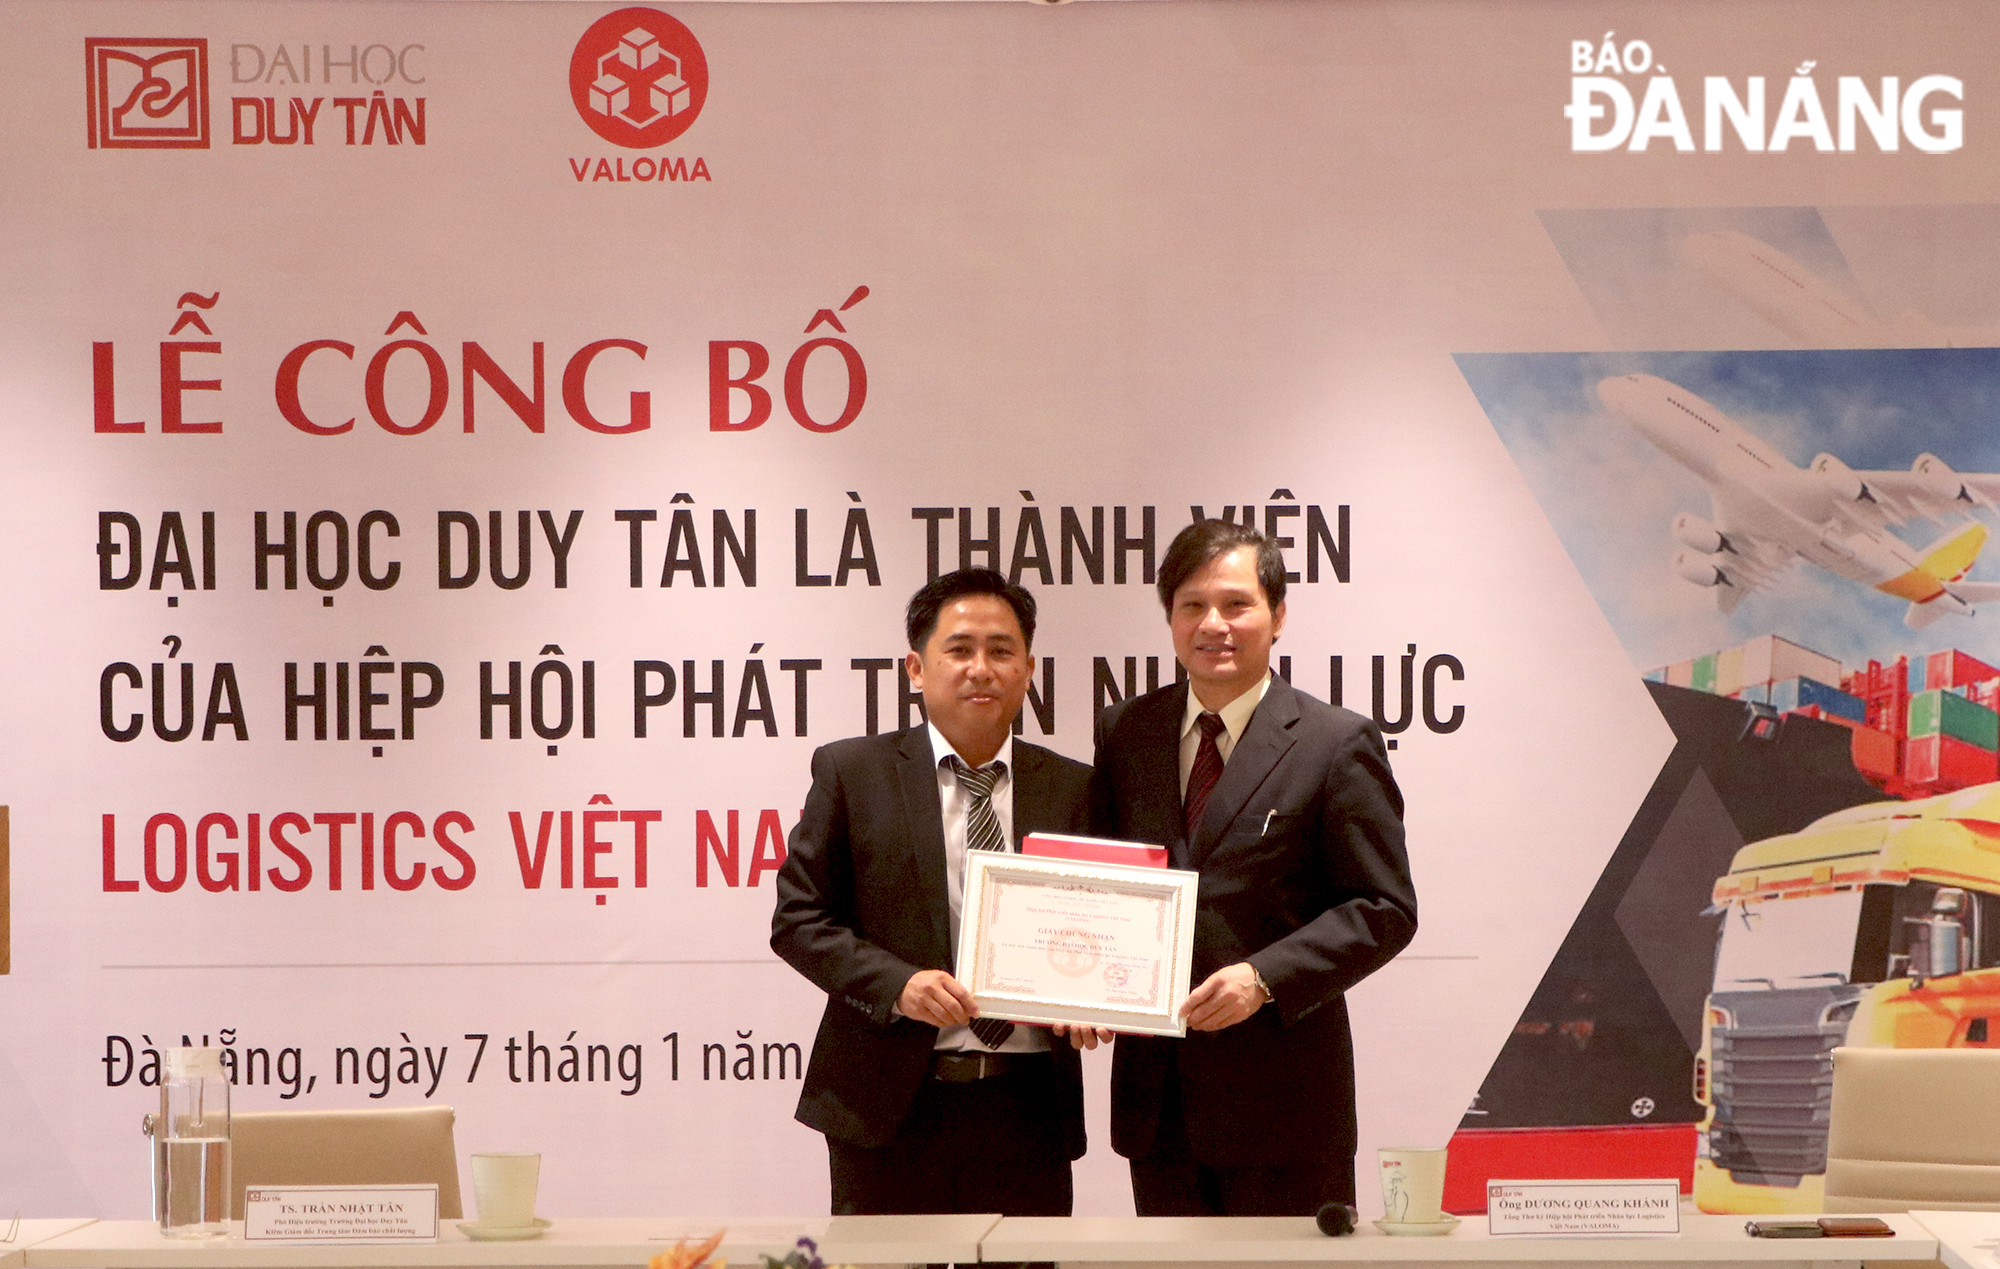 Tổng Thư ký Hiệp hội Valoma Dương Quang Khánh (bên phải) trao quyết định công nhận Trường Đại học Duy Tân trở thành thành viên của hiệp hội trong sáng 7-1. Ảnh: VĂN HOÀNG